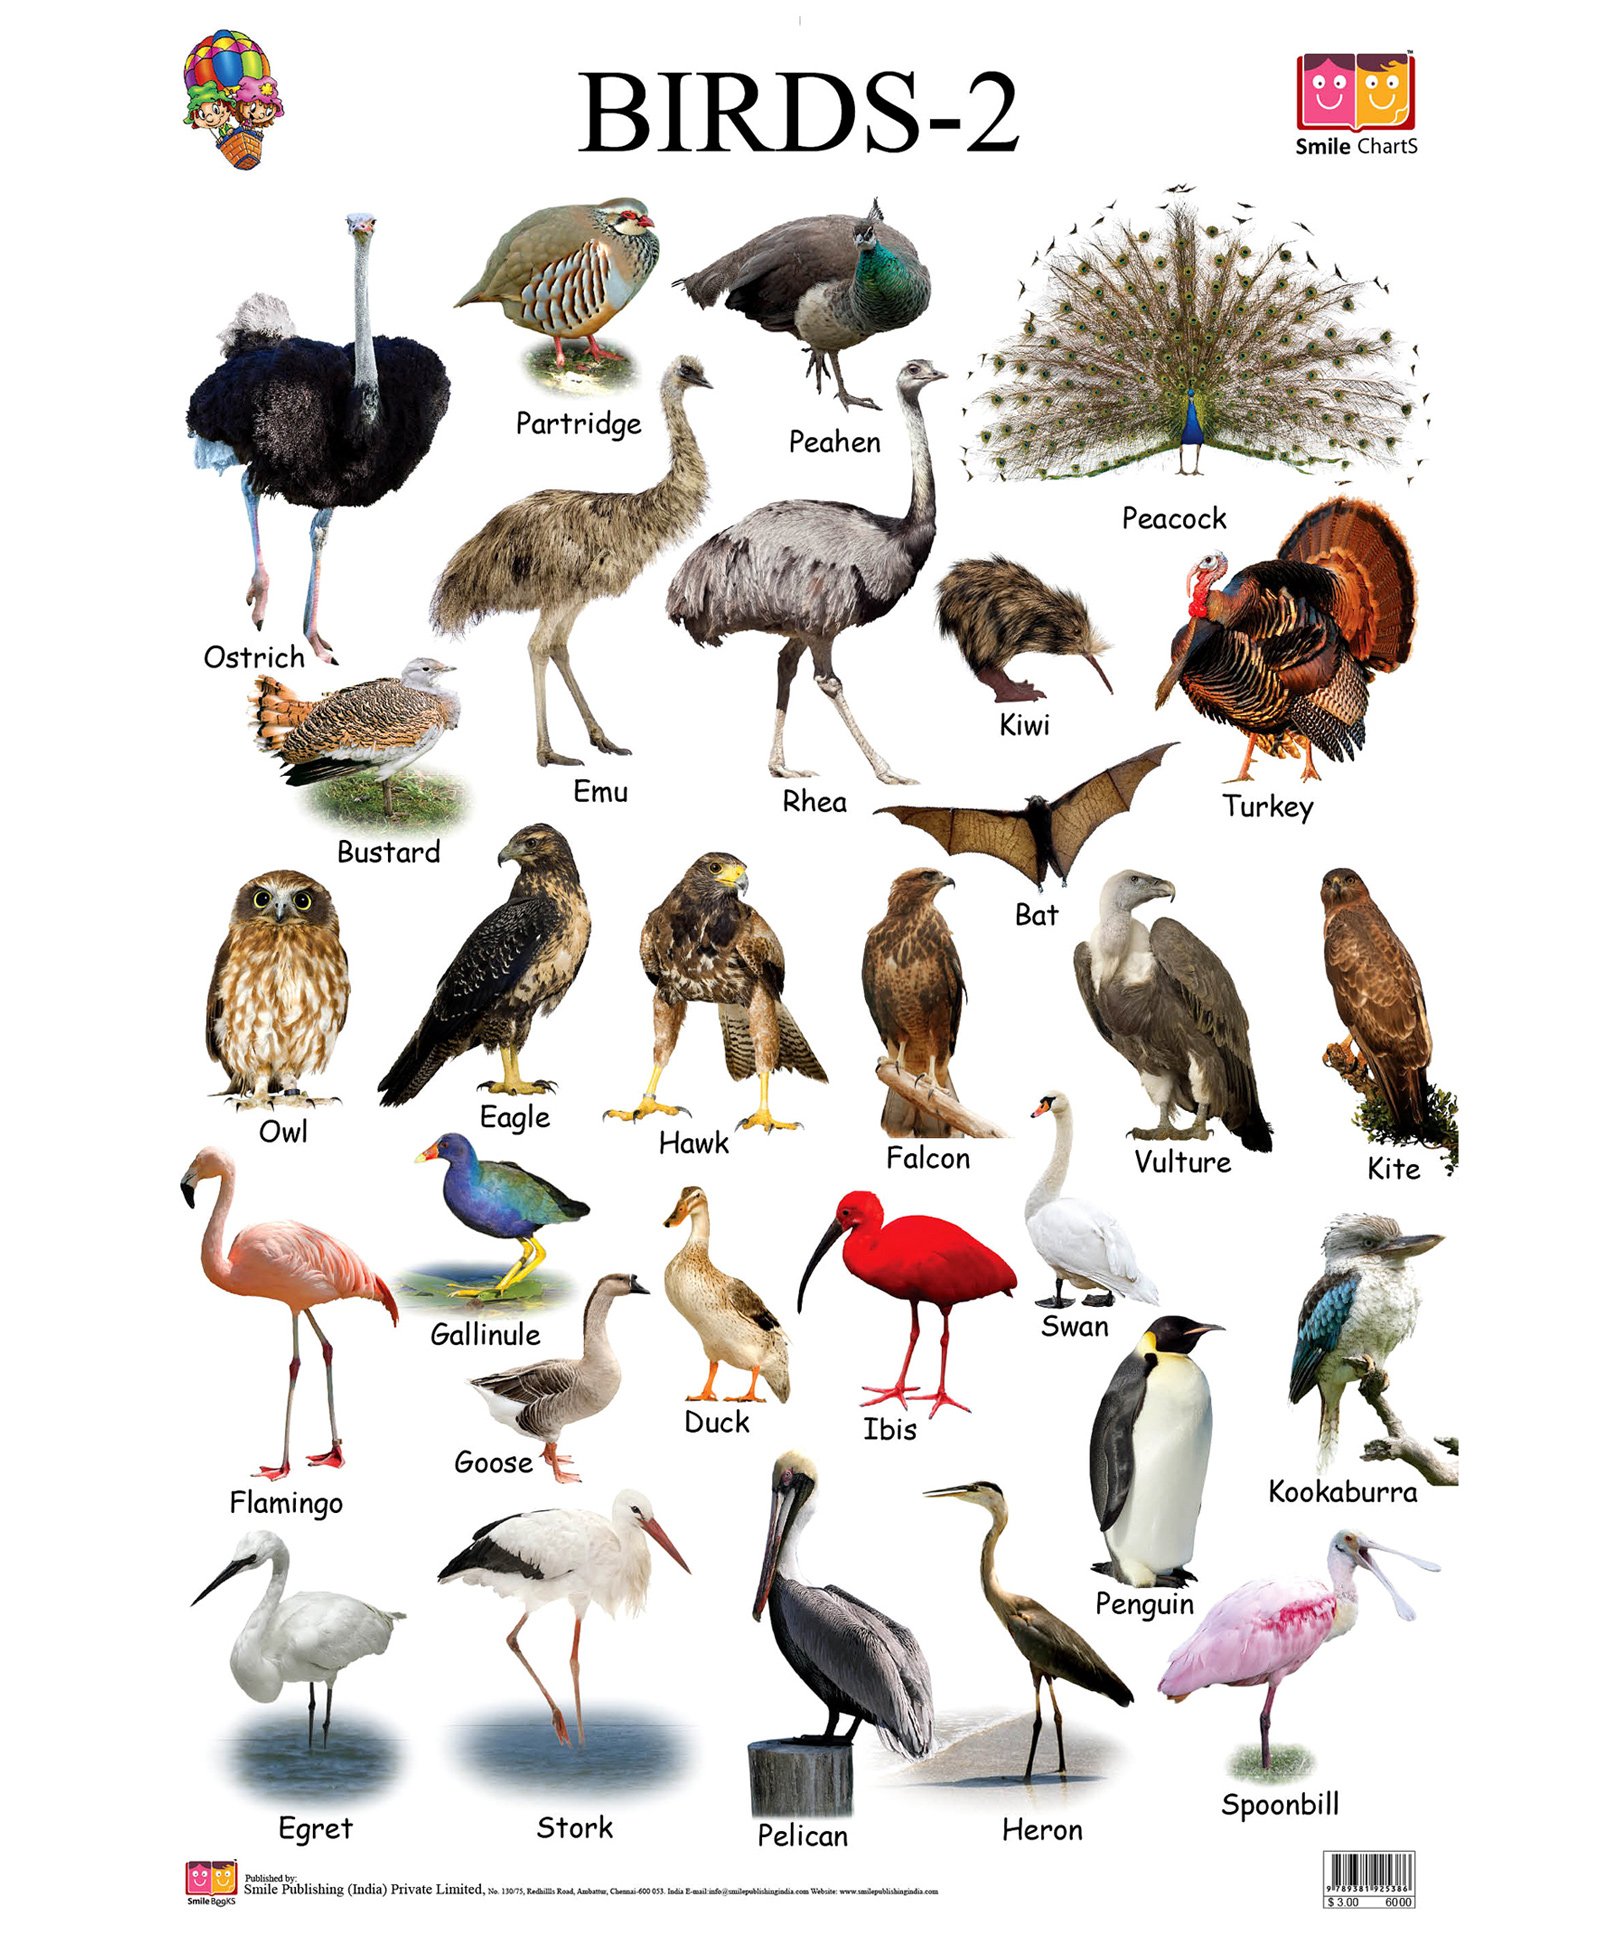 Название птиц и животных